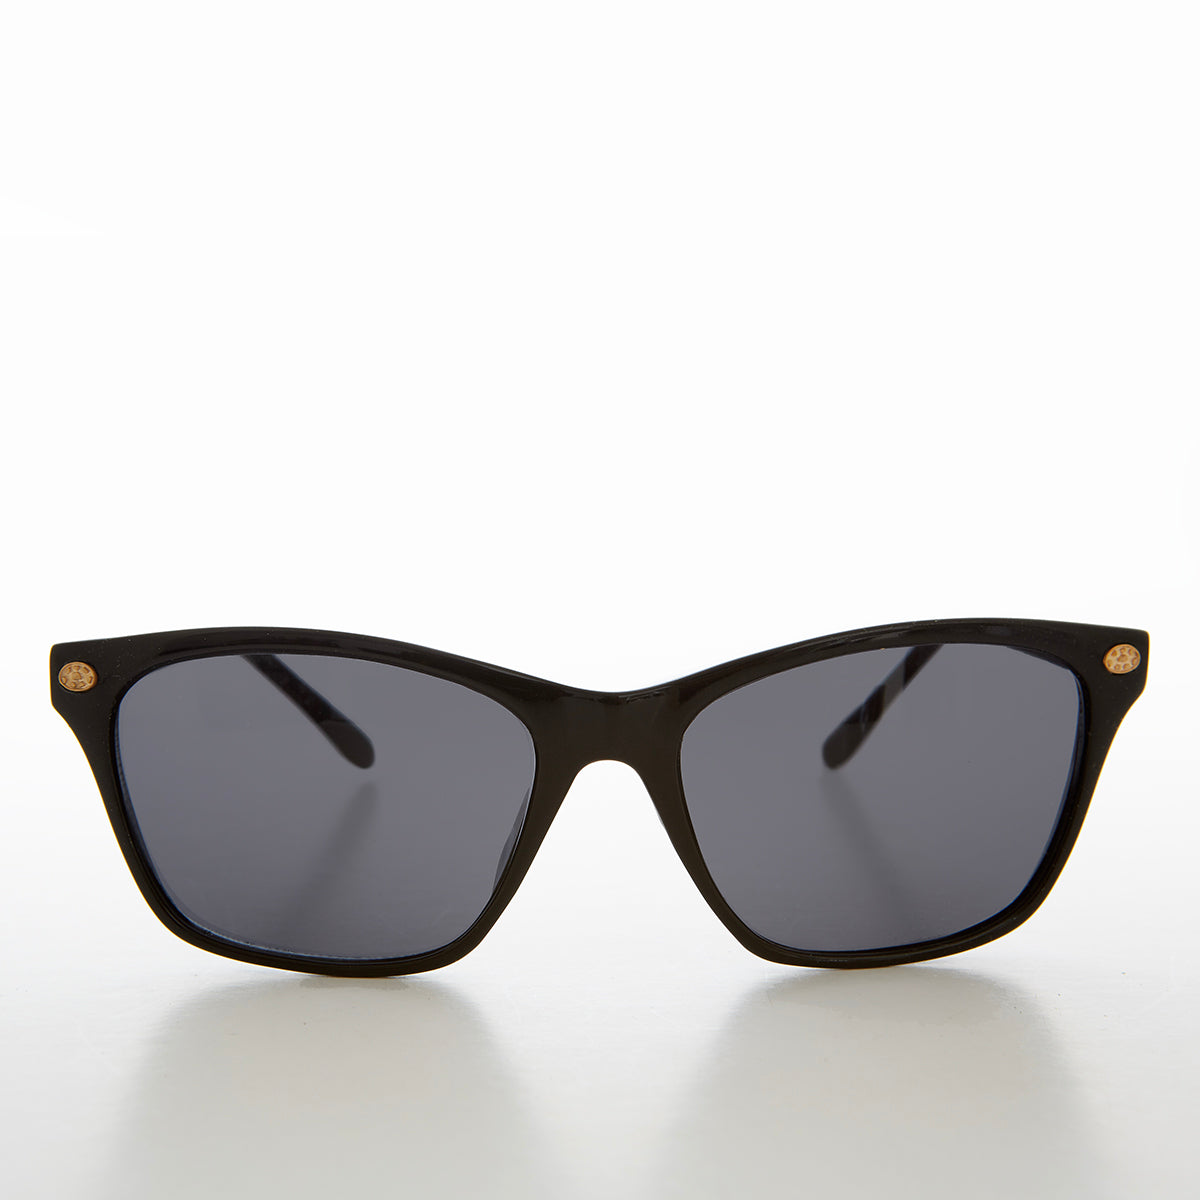 Black Simple Classic Vintage Sunglasses